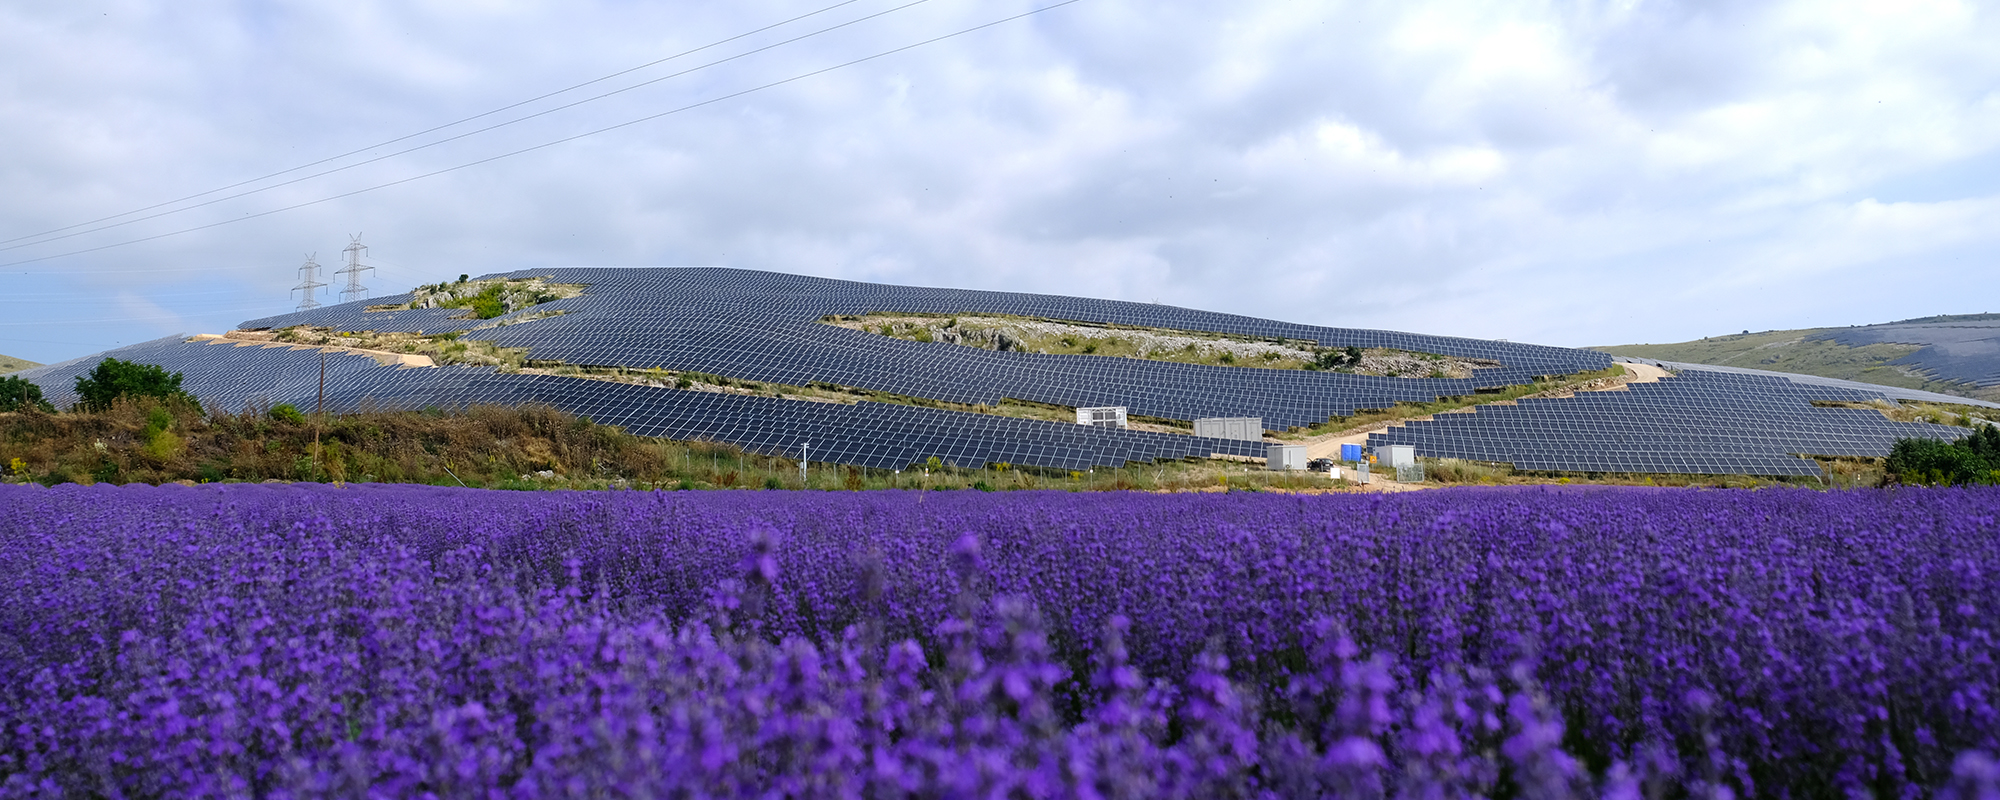 Purple flowers in front of Kozani solar farm in Greece